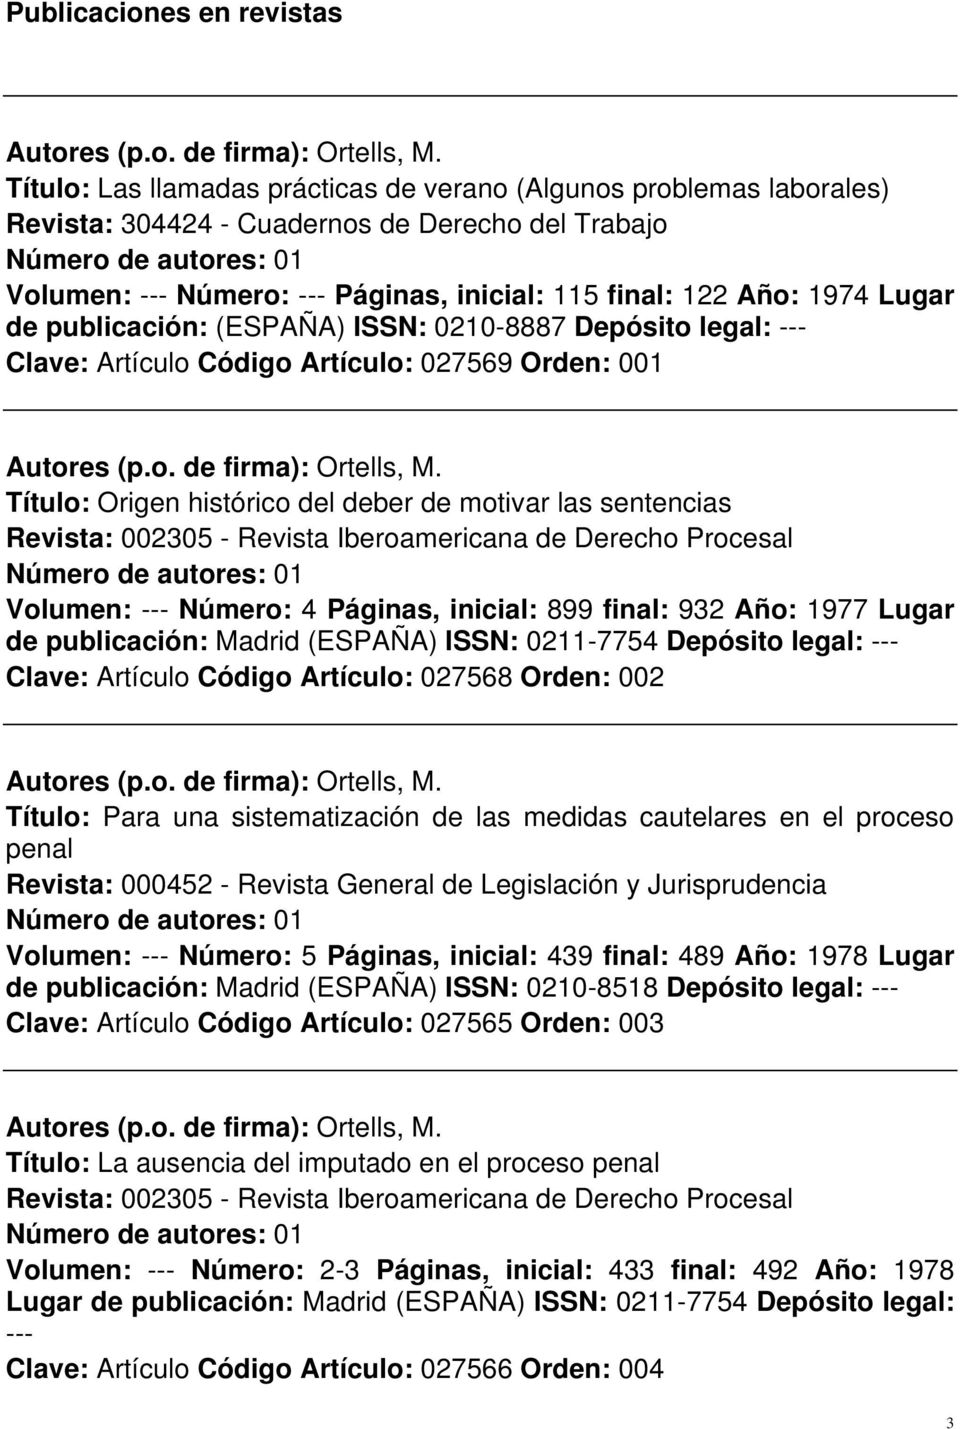 Revista: 002305 - Revista Iberoamericana de Derecho Procesal Volumen: --- Número: 4 Páginas, inicial: 899 final: 932 Año: 1977 Lugar de publicación: Madrid (ESPAÑA) ISSN: 0211-7754 Depósito legal: